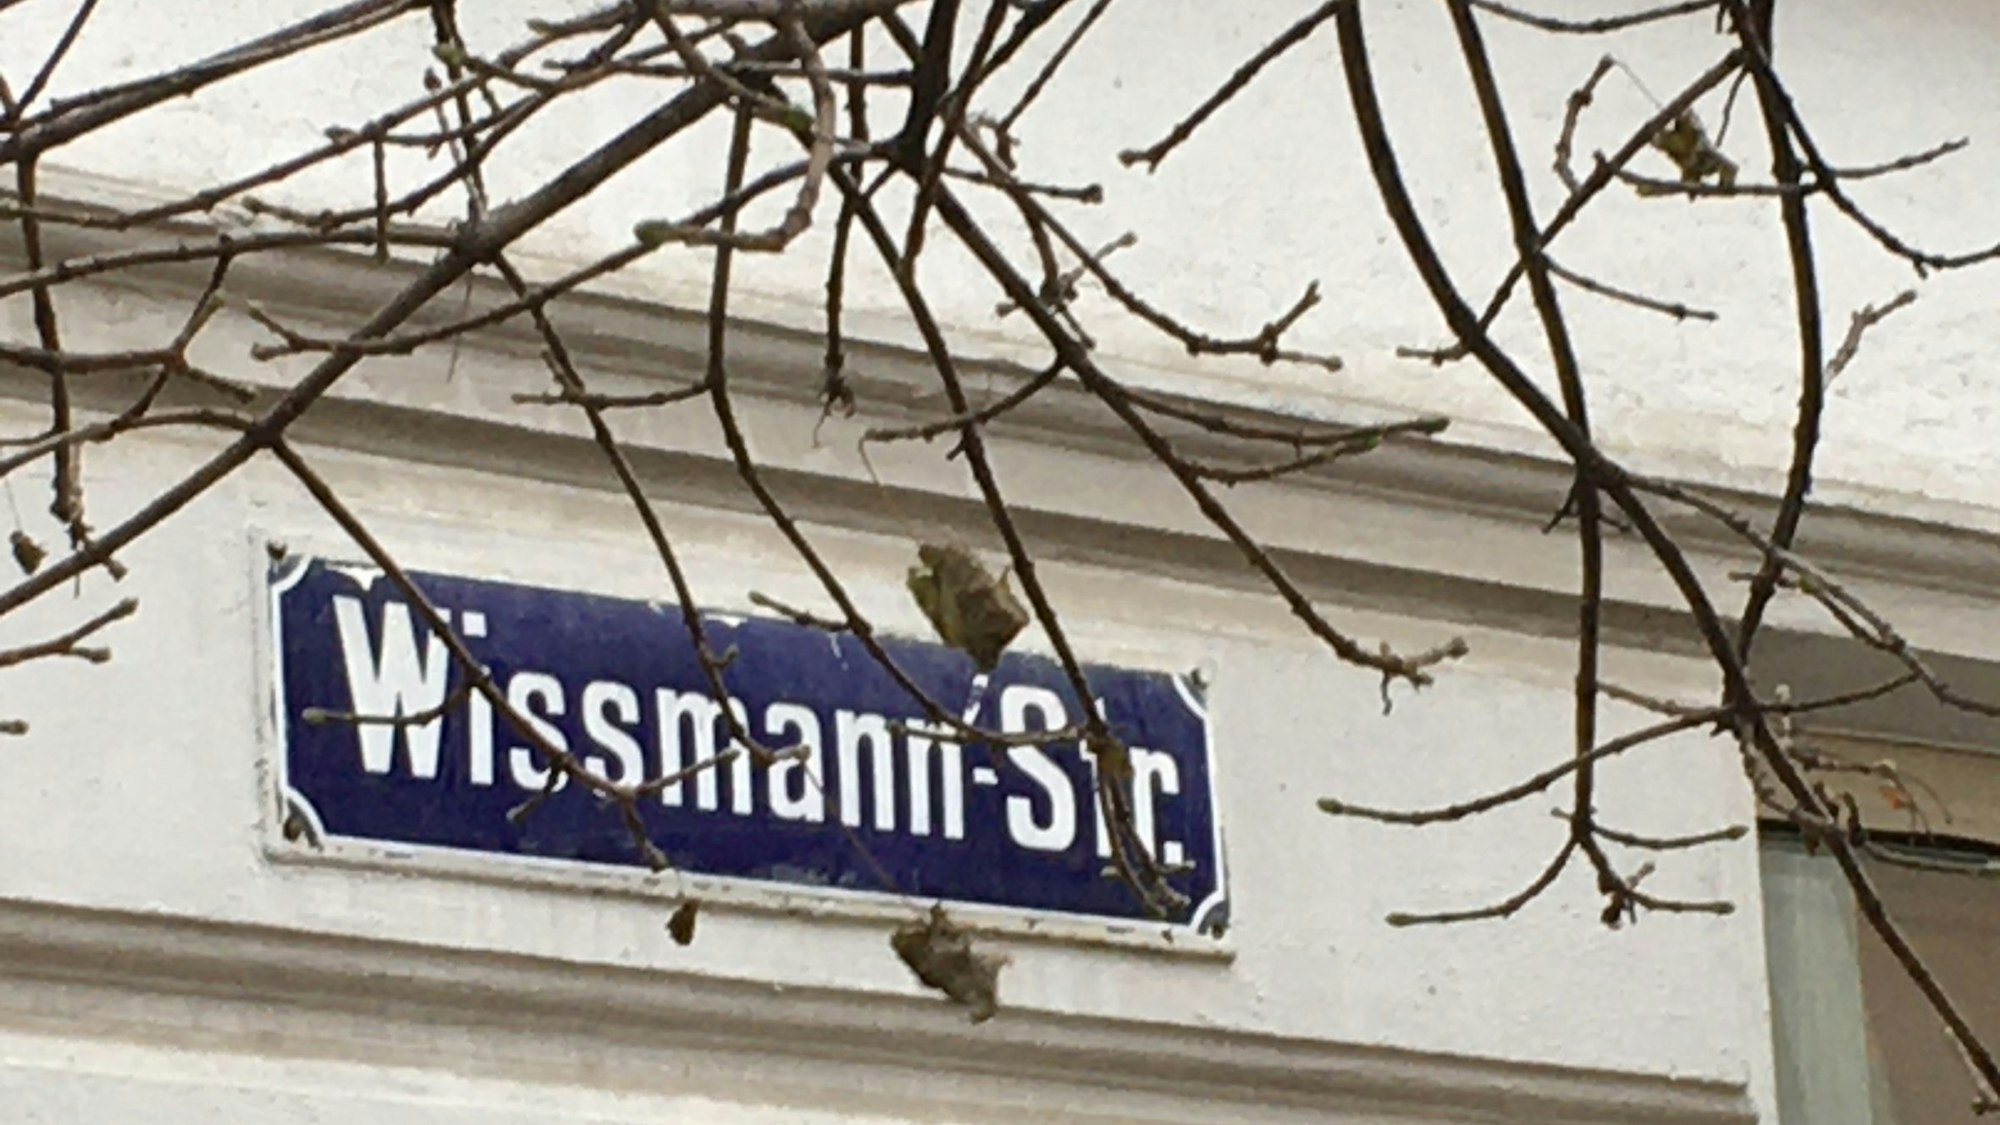 Ein Straßenname auf einem blauen Schild hängt an einer Hauswand.